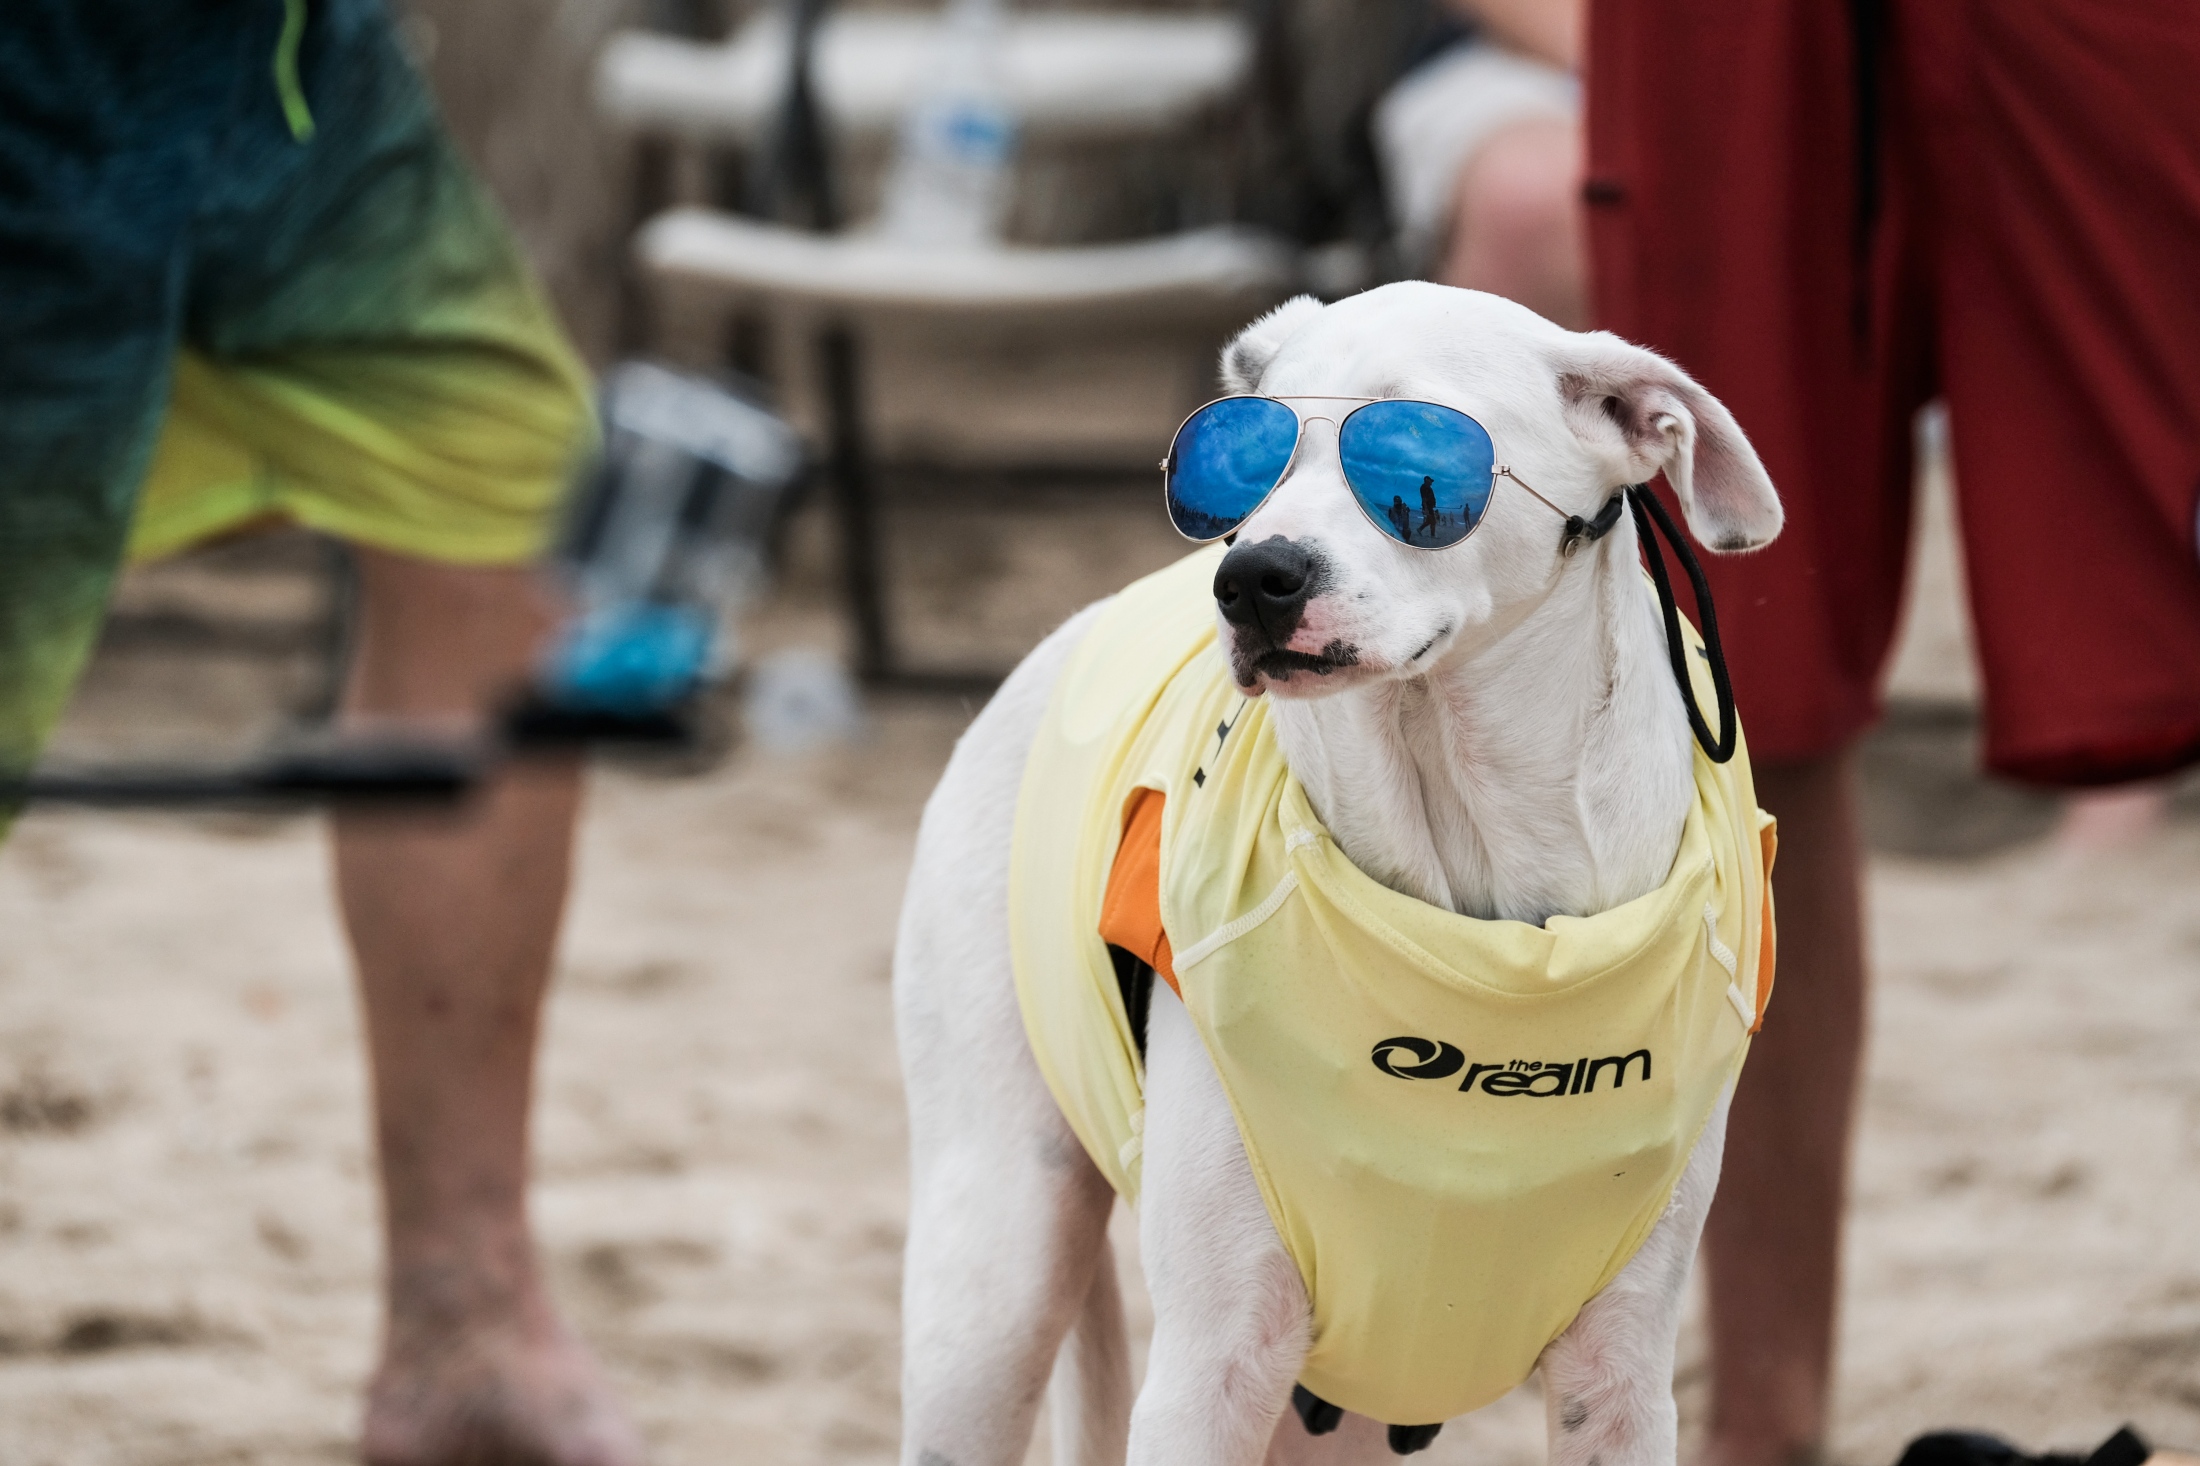 Surf City Surf Dog - 